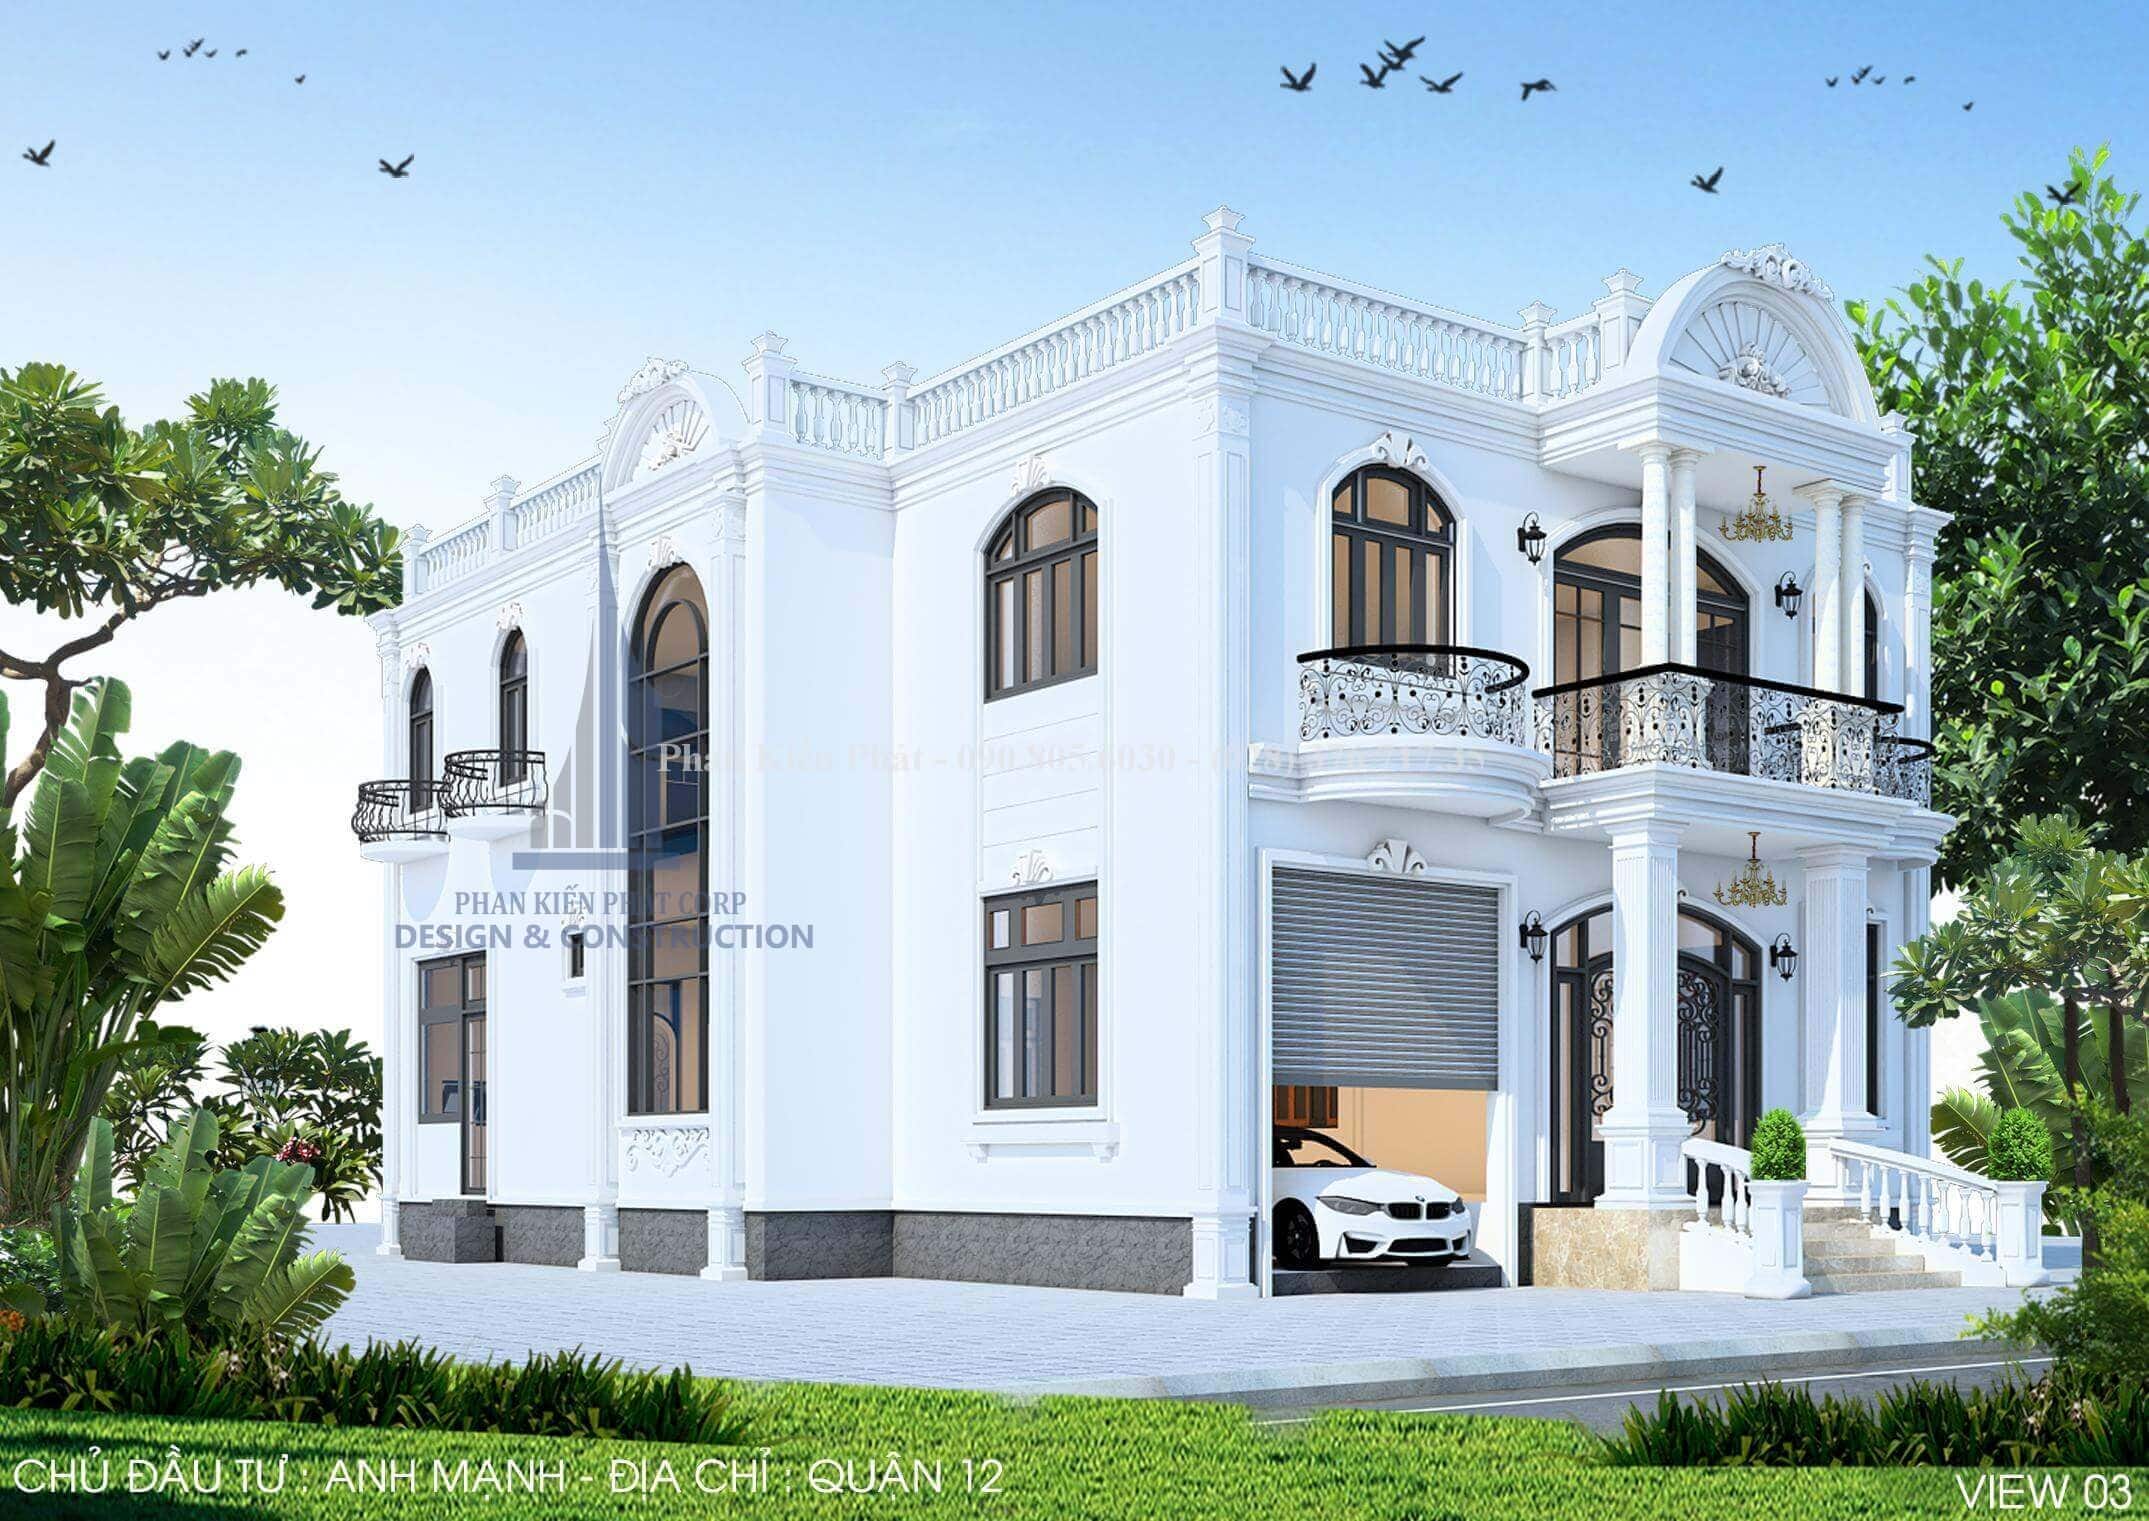 Mẫu biệt thự bán cổ điển đẹp với tông màu trắng làm chủ đạo của mẫu thiết kế biệt thự bán cổ điển